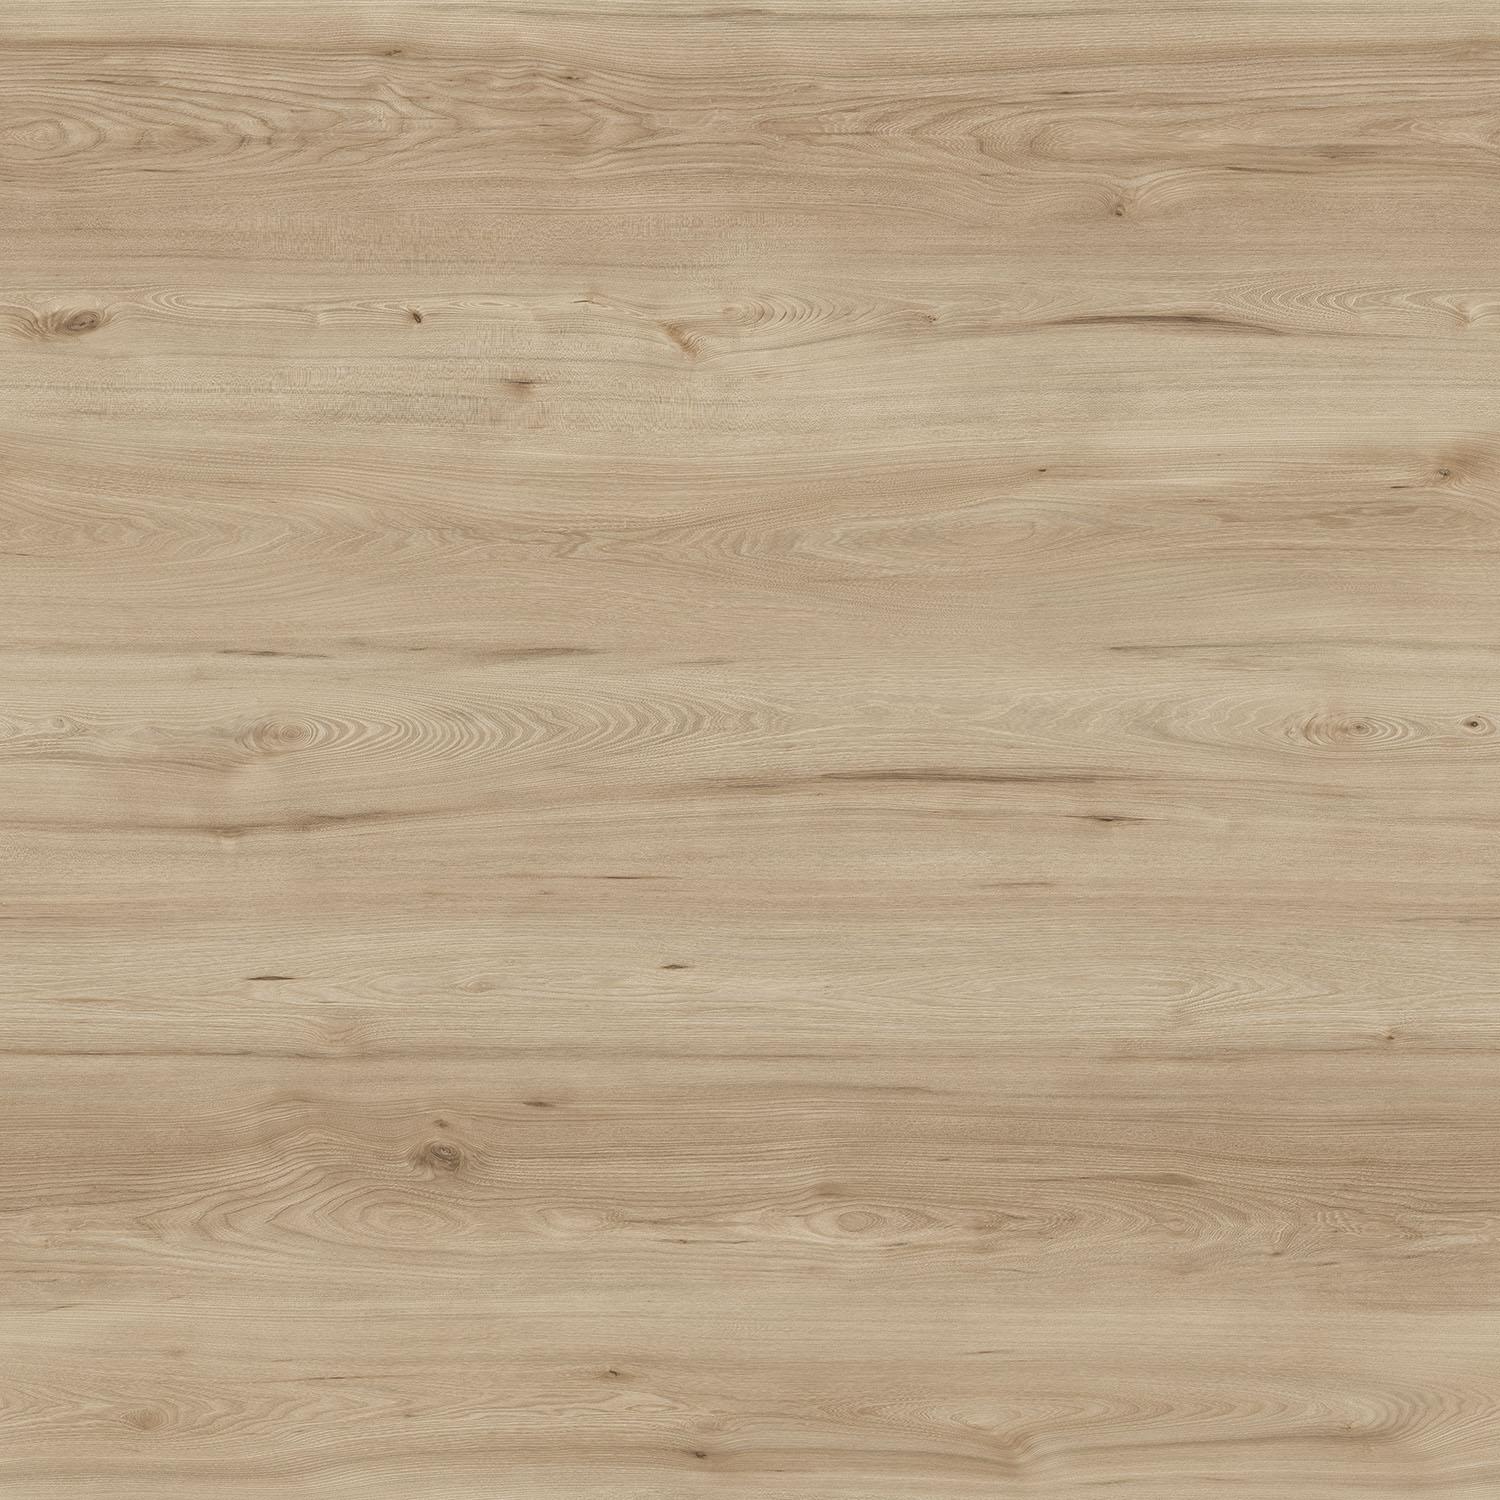 Wise Wood Waterproof Cork Flooring By, Hardwood Flooring Cork